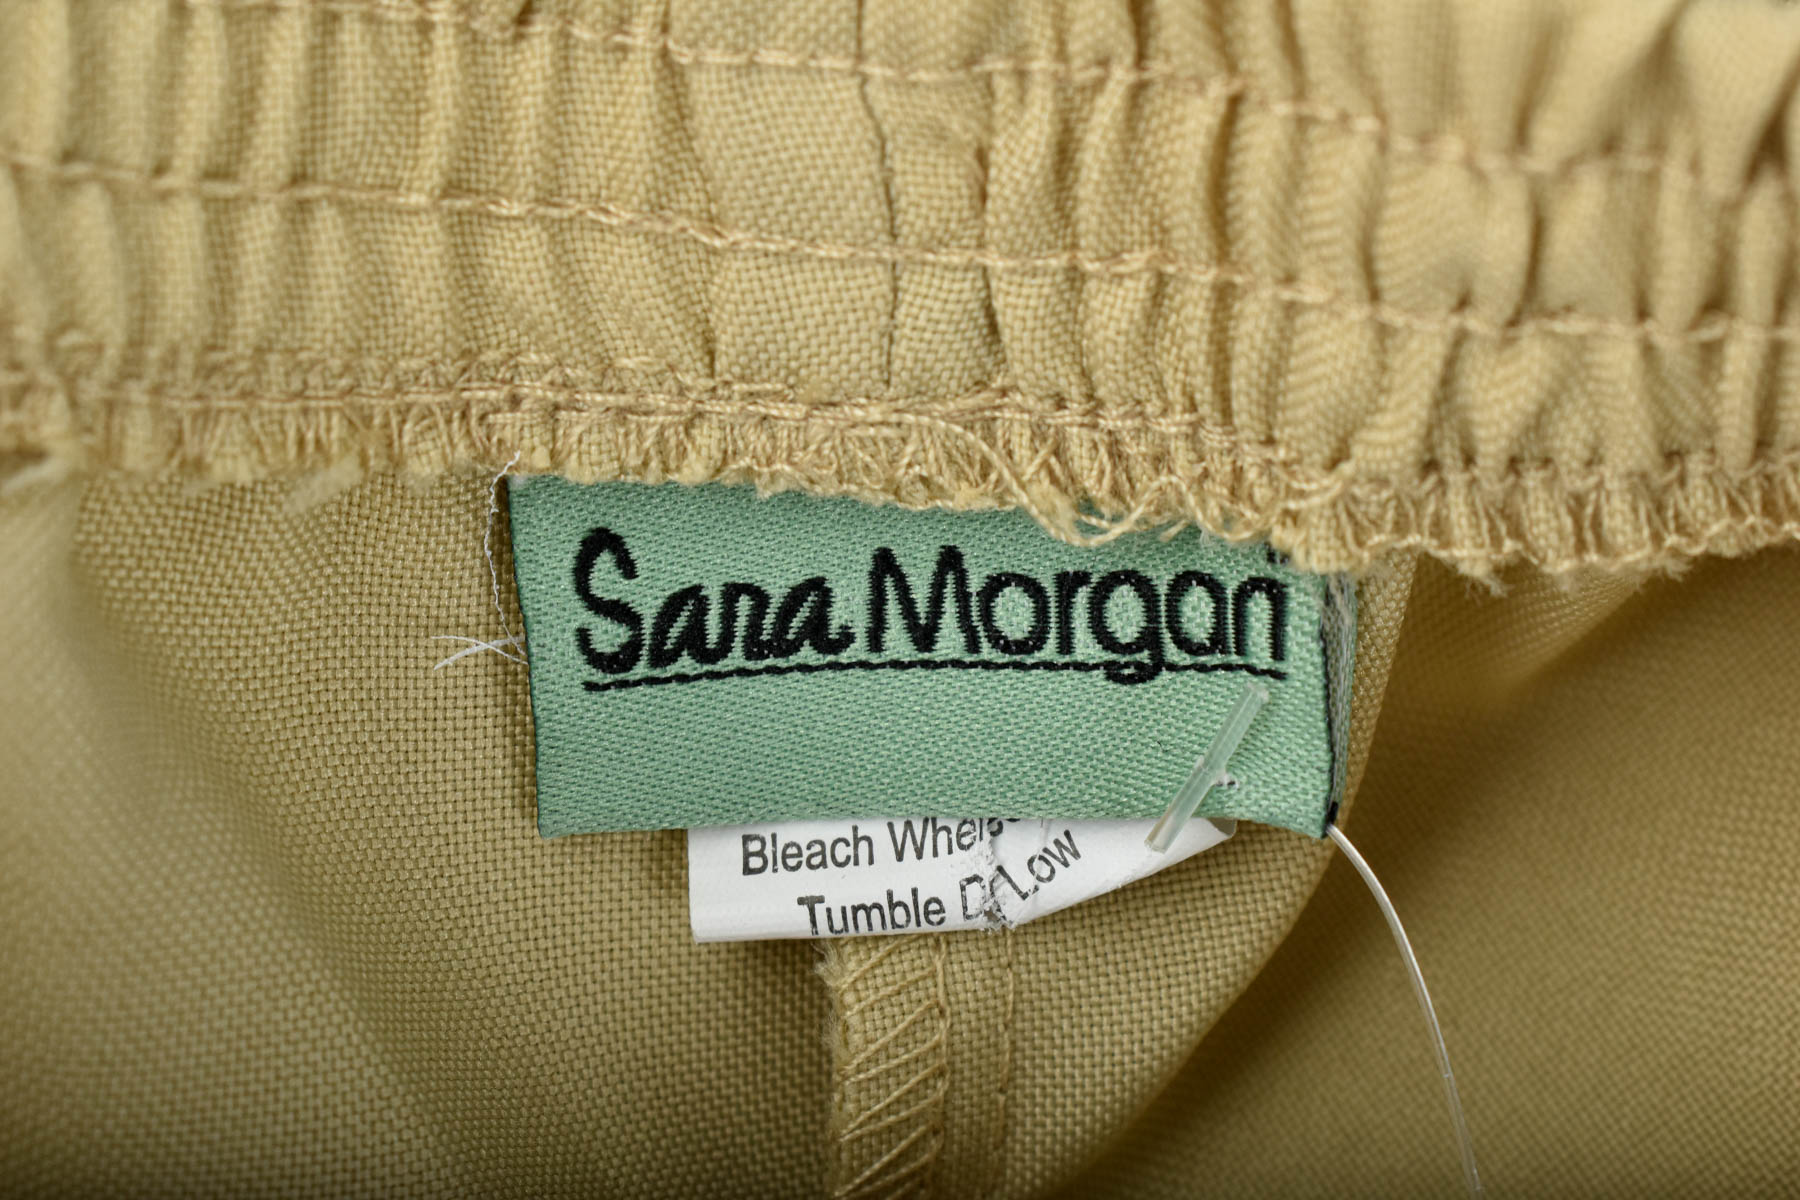 Female sports wear - Sara Morgan - 2